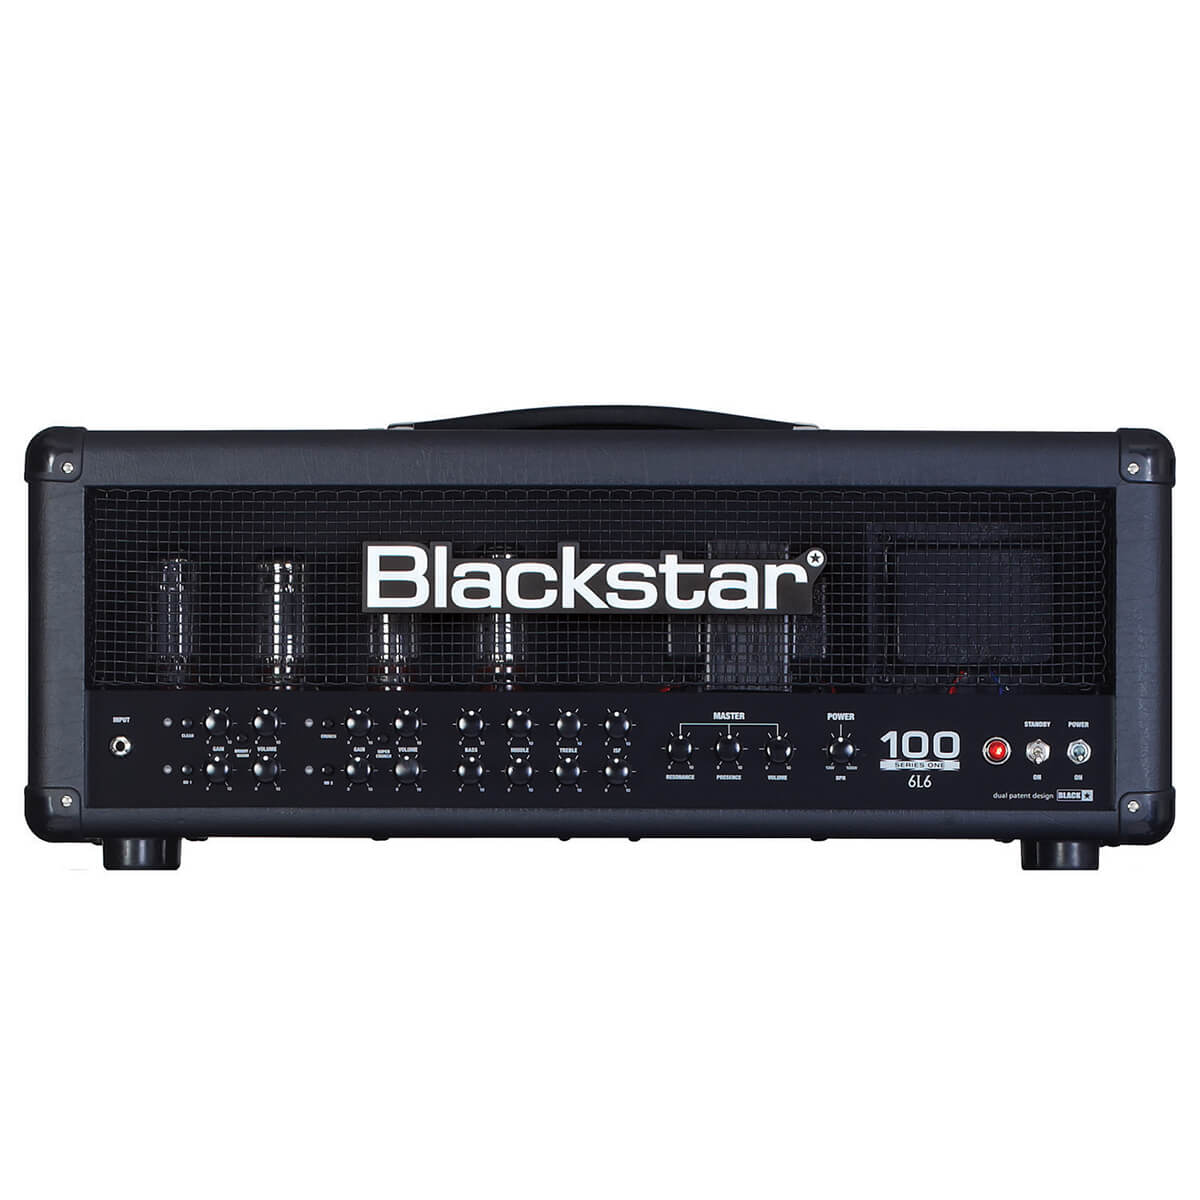 Blackstar Series One 104 6L6 Head